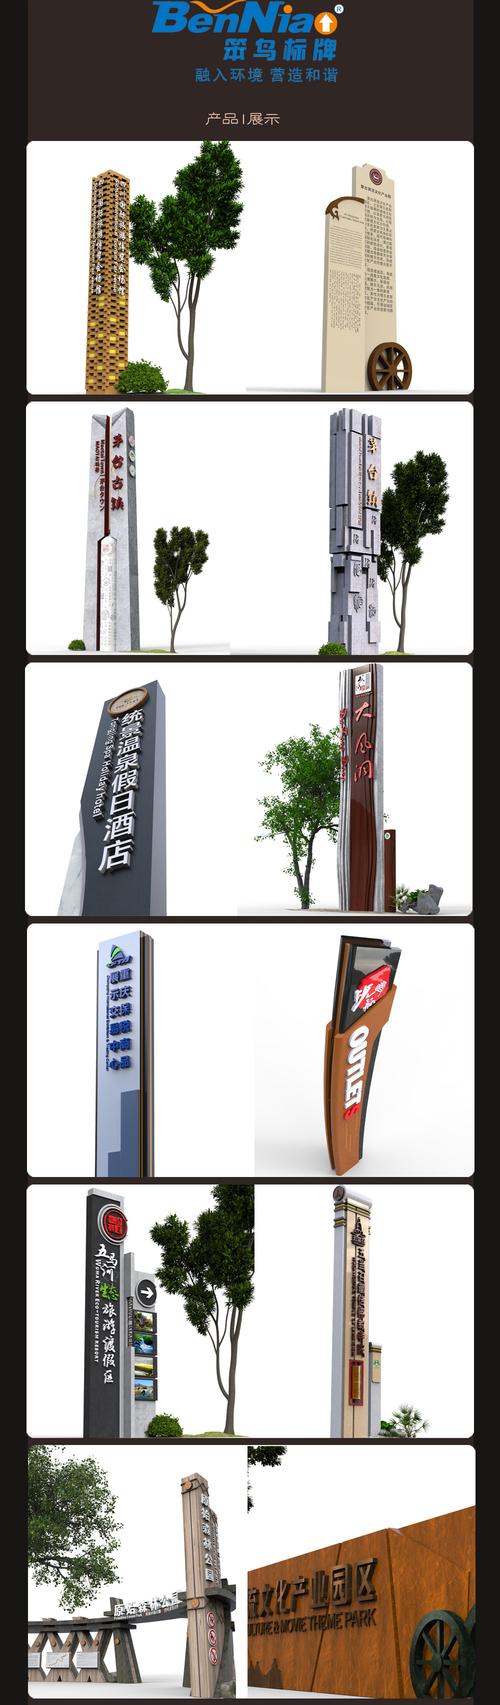 重庆南岸区benniao笨鸟可定制广告牌代理电话